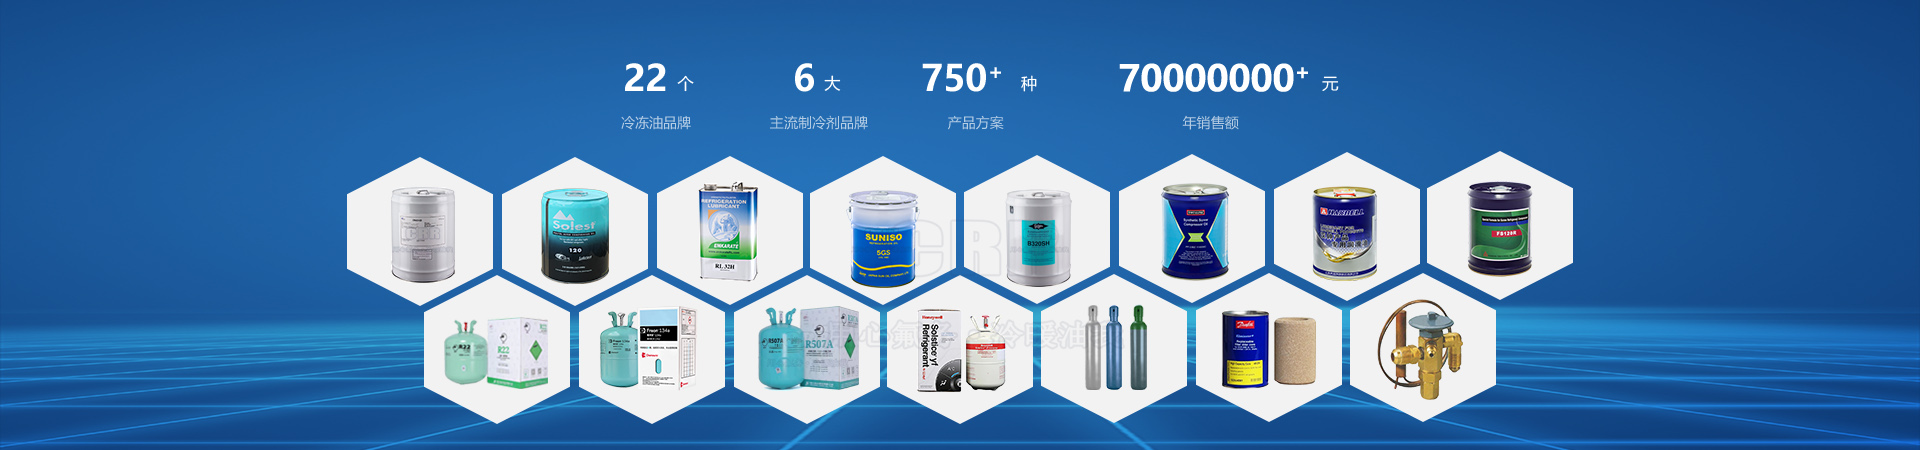 22个冷冻油品牌 6大主流制冷剂品牌 750+种产品方案 I500000+升-广州中冷